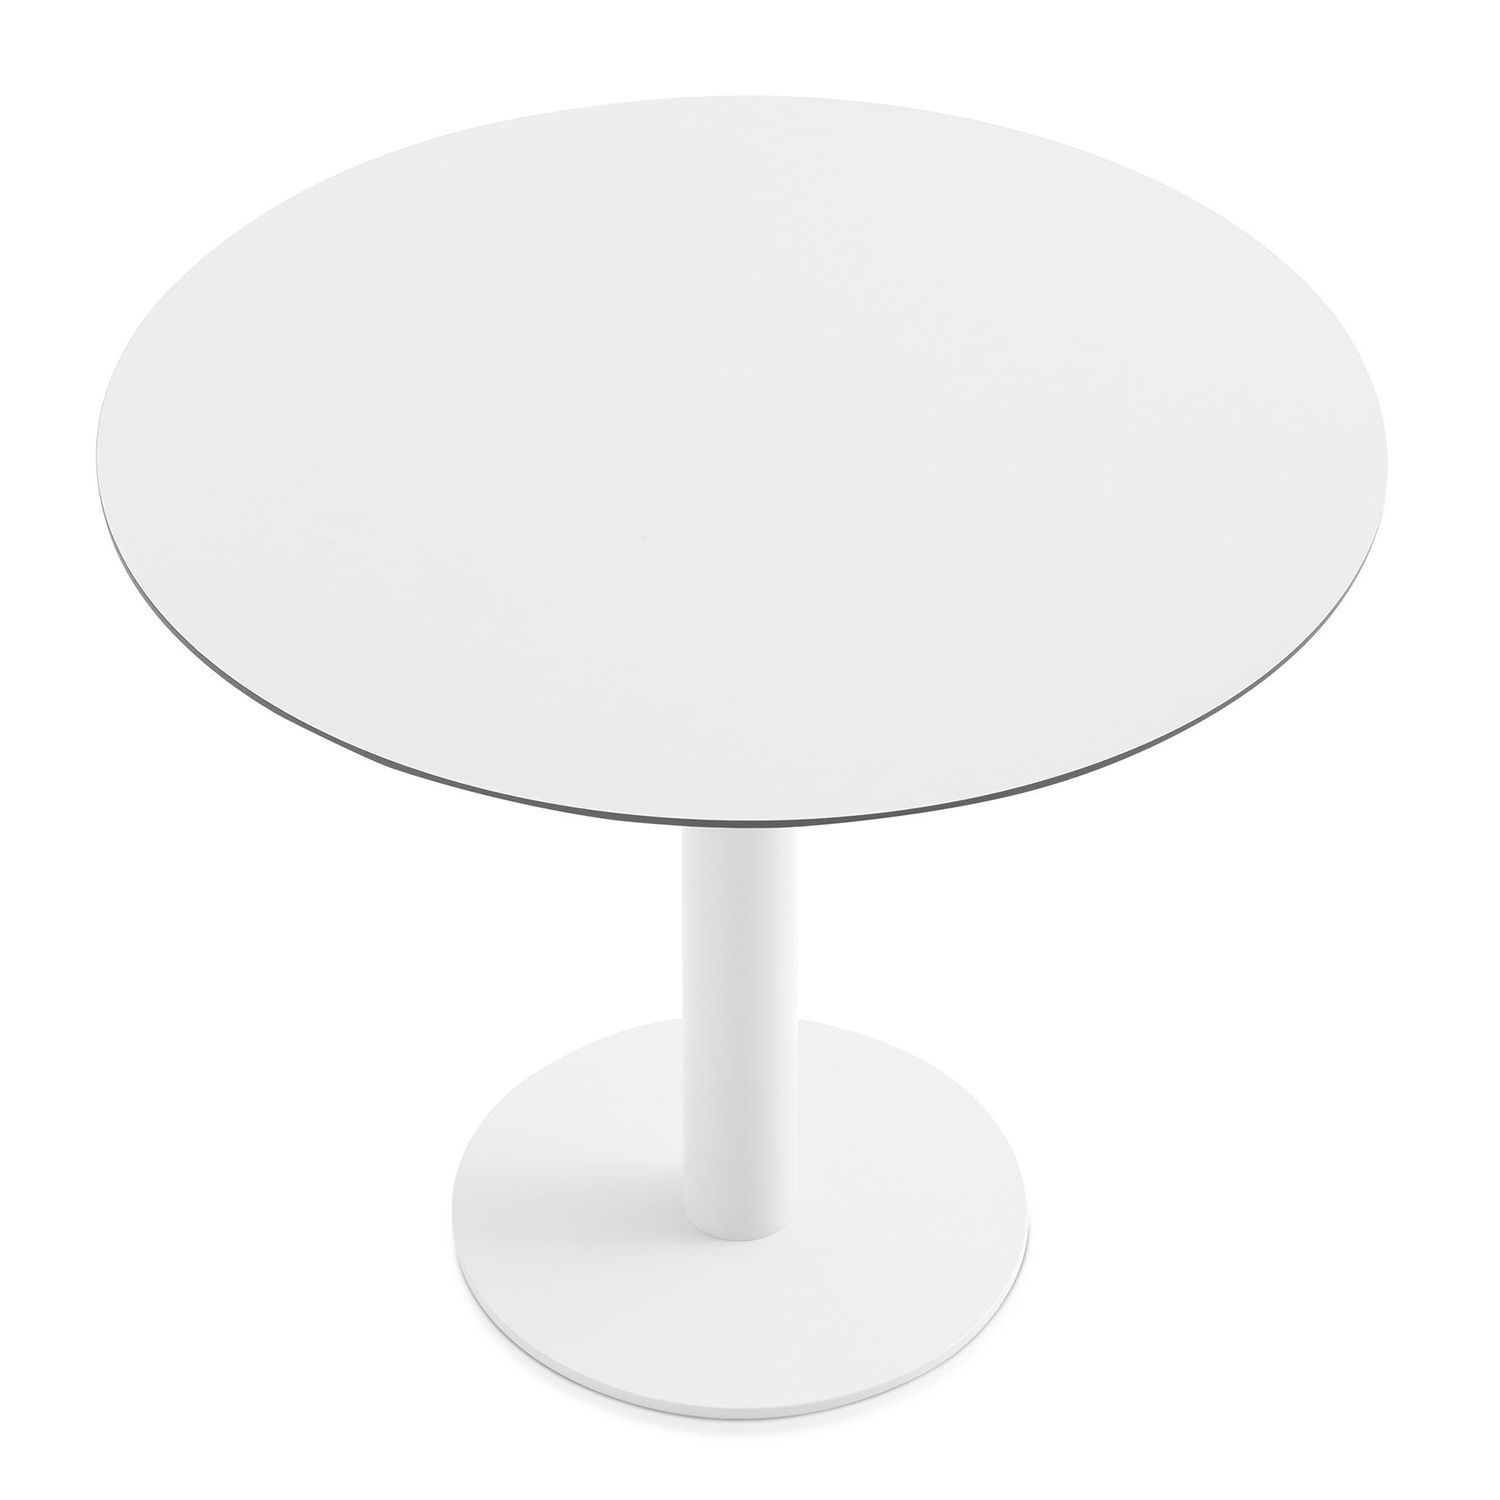 Designové jídelní stoly Mona Table (průměr 70 cm) - DESIGNPROPAGANDA